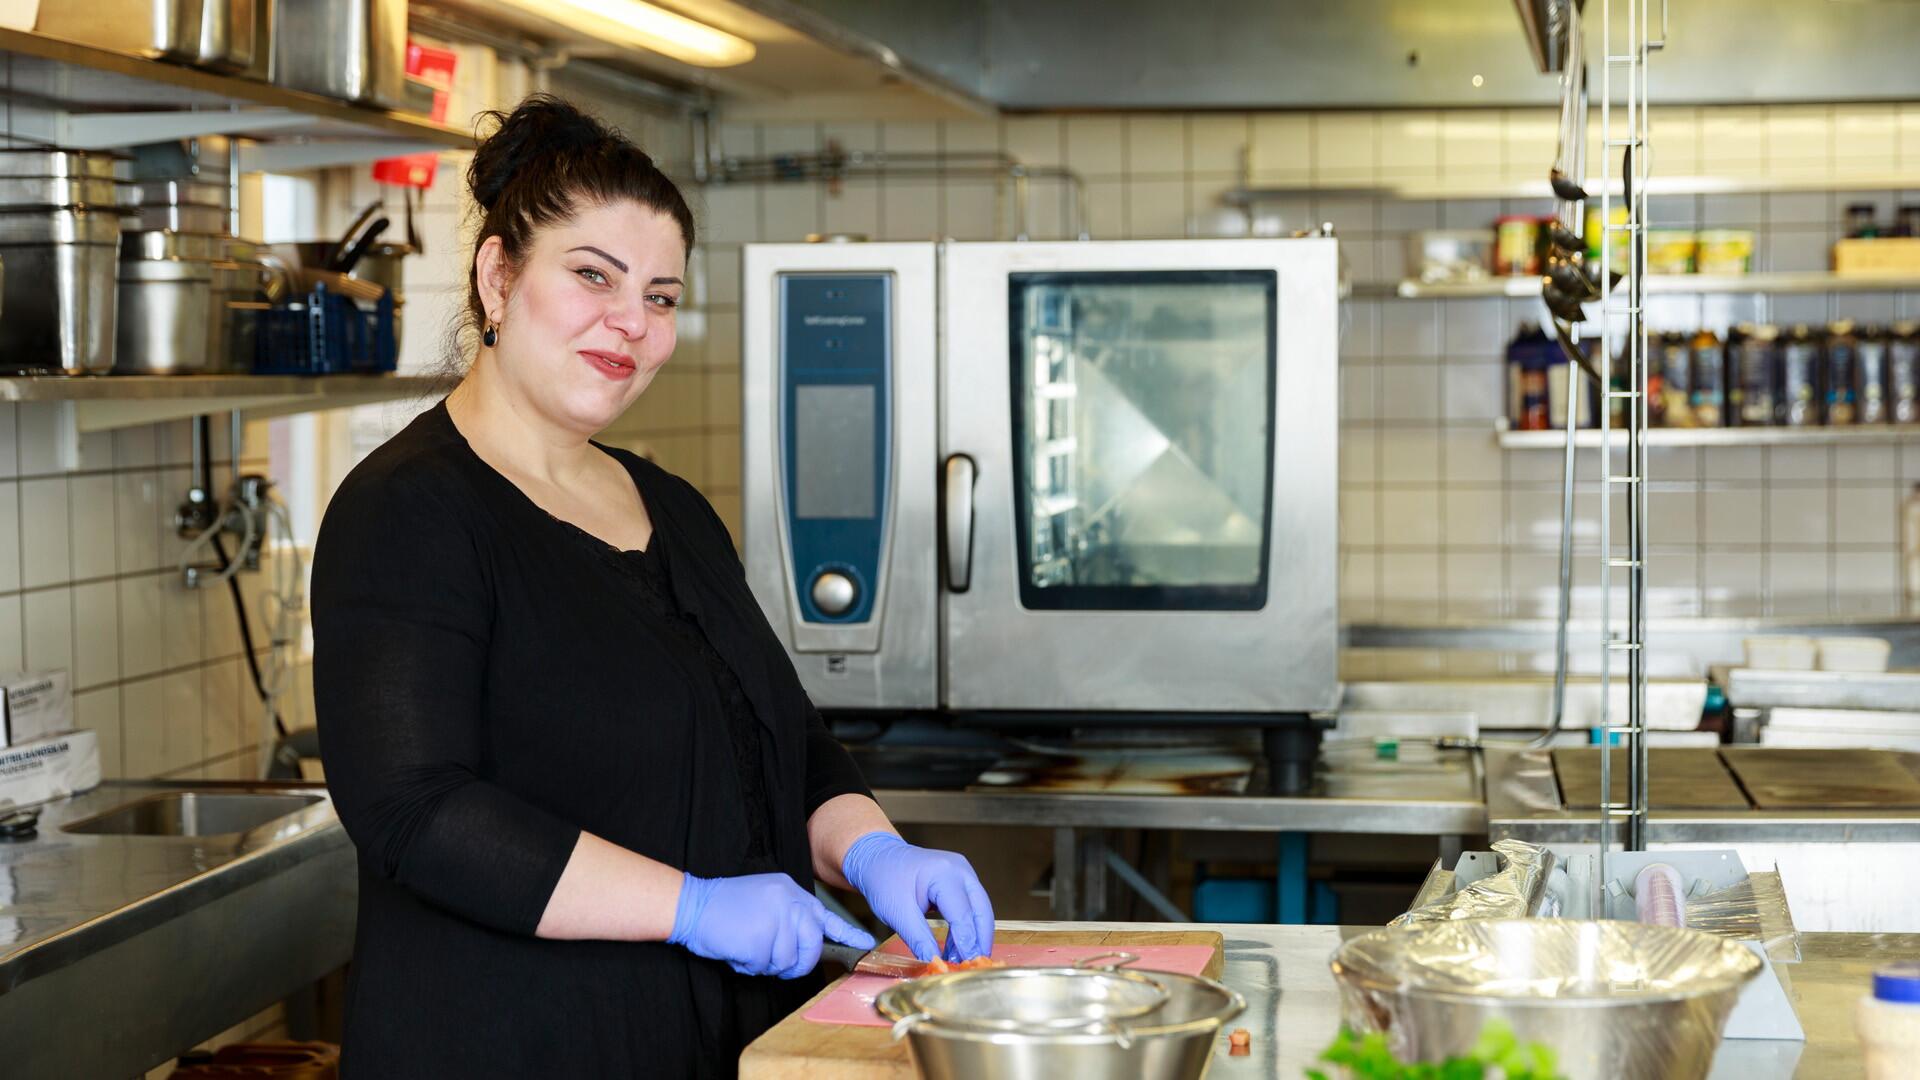 Kvinna står i ett restaurangkök. Hon har blå plasthandskar och skär grönsaker.